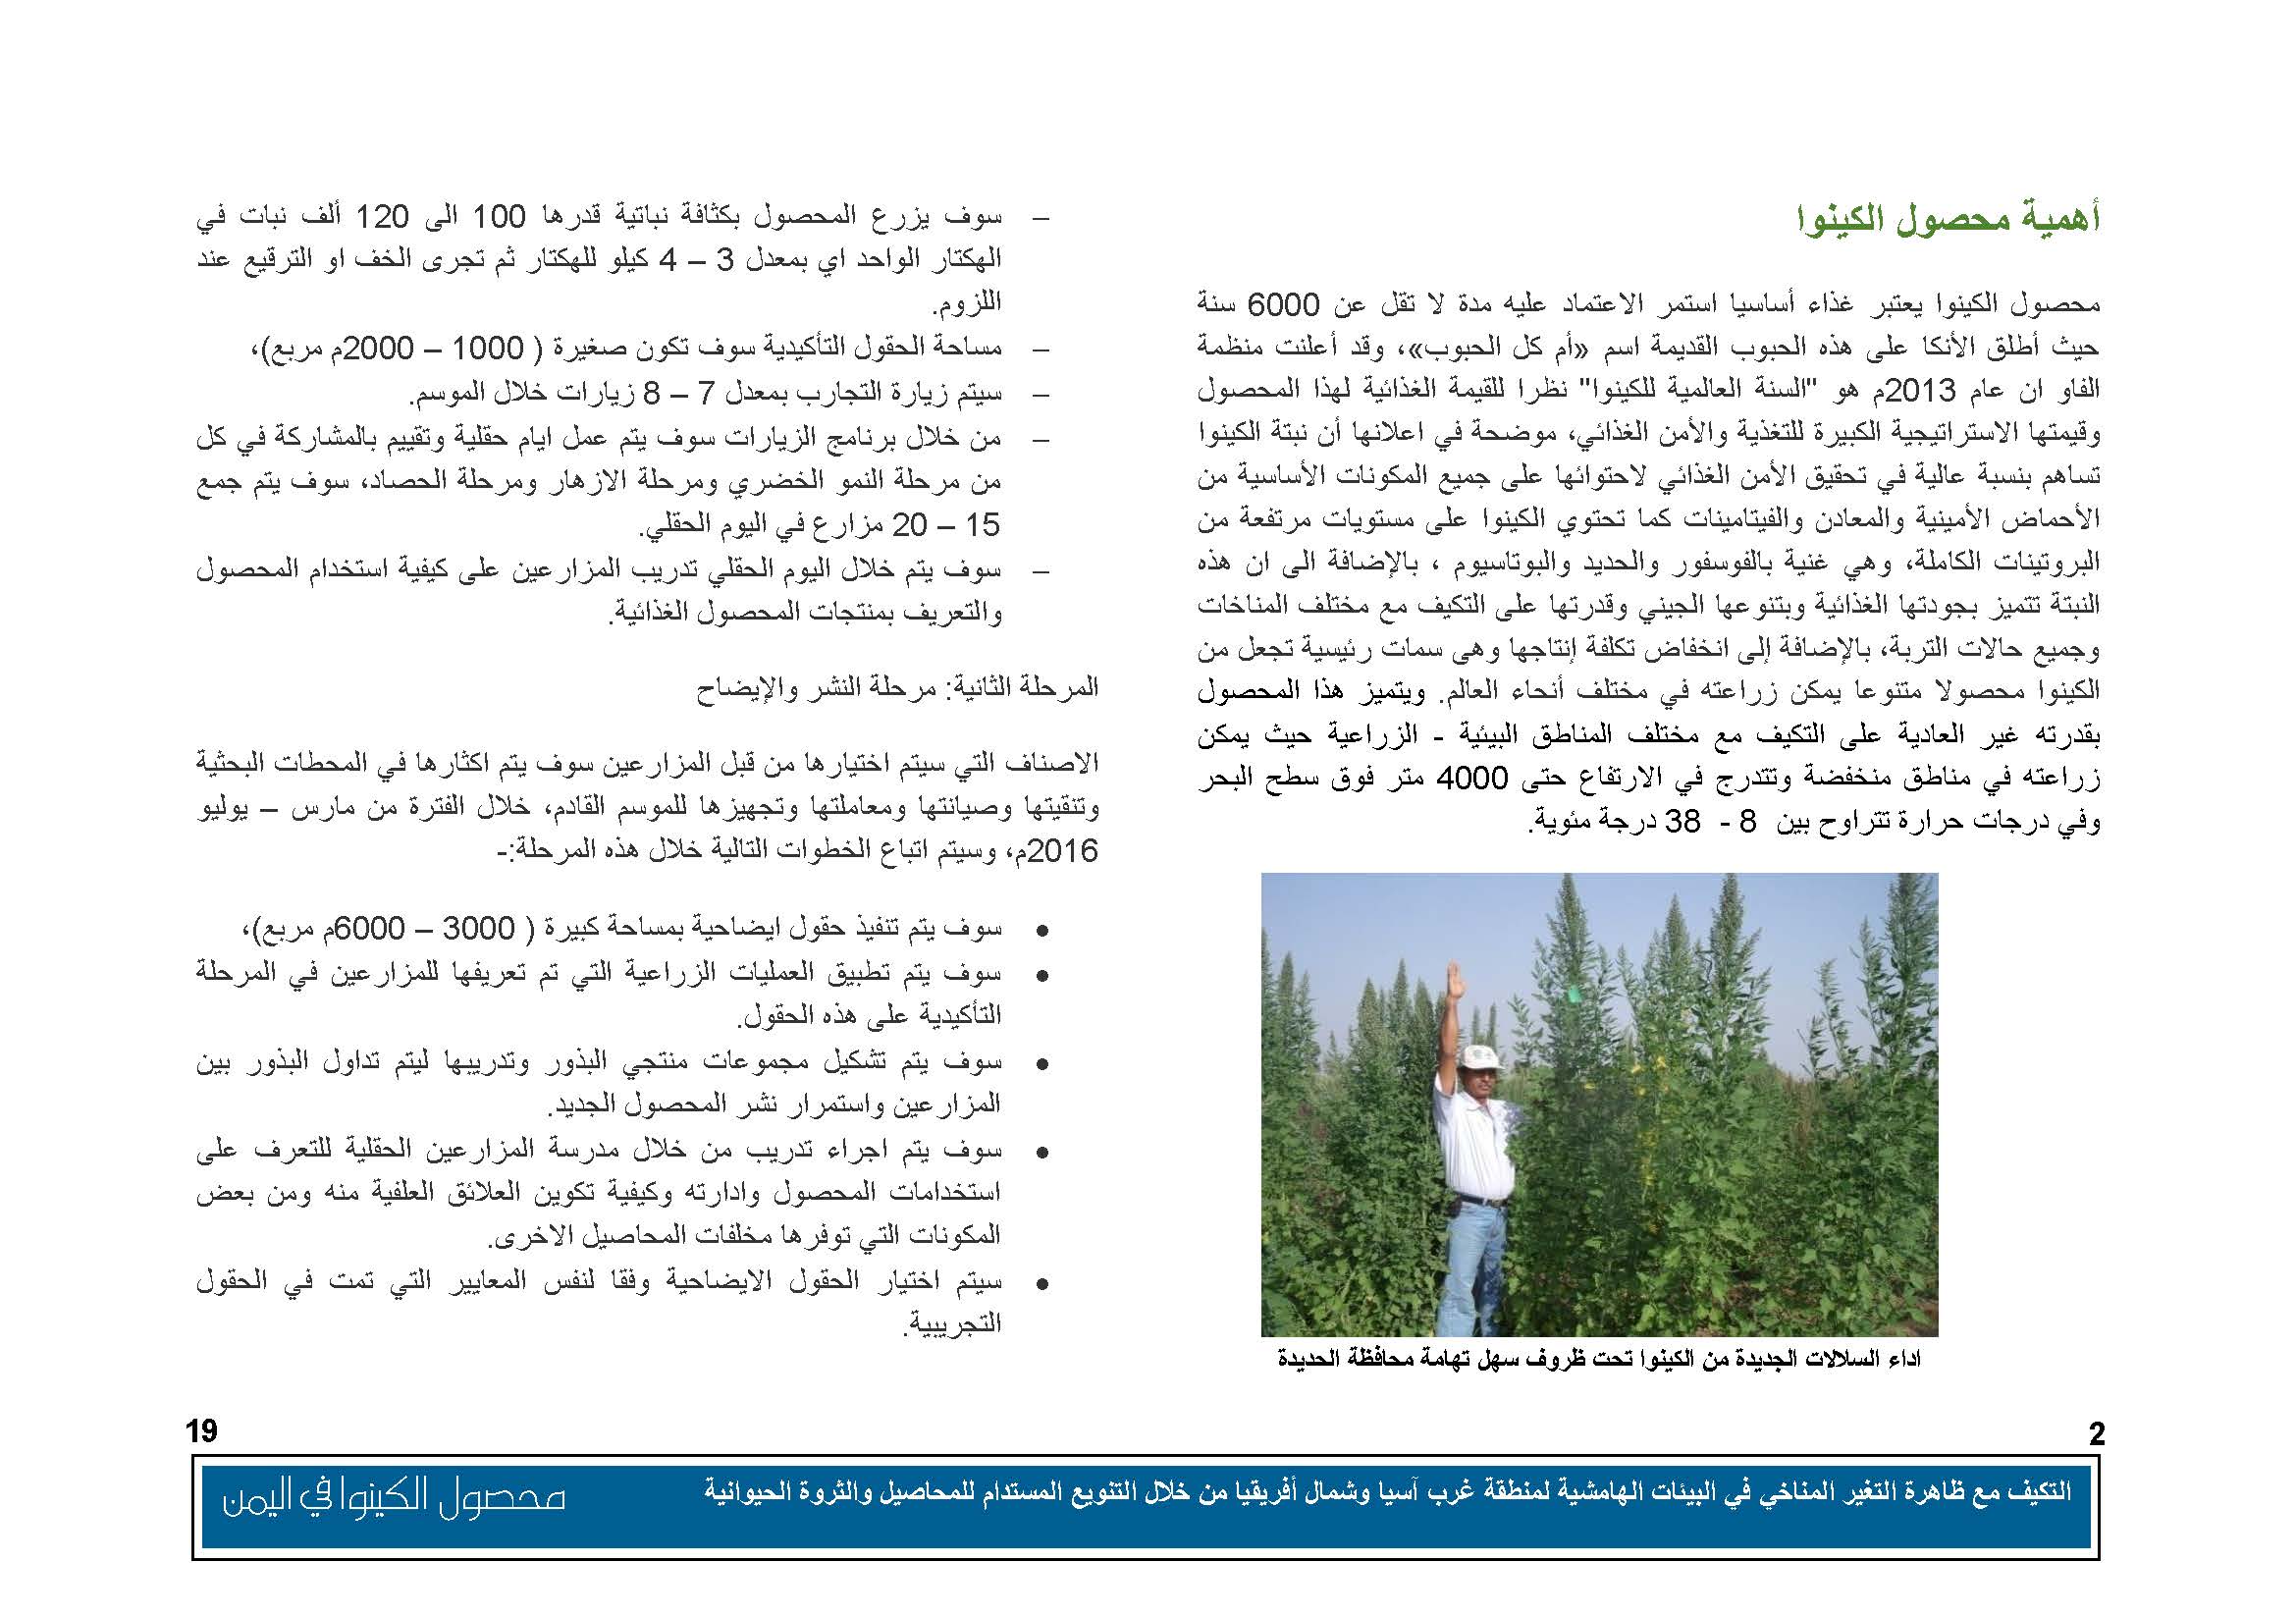 محصول الكينوا في اليمن (1)_Page_03